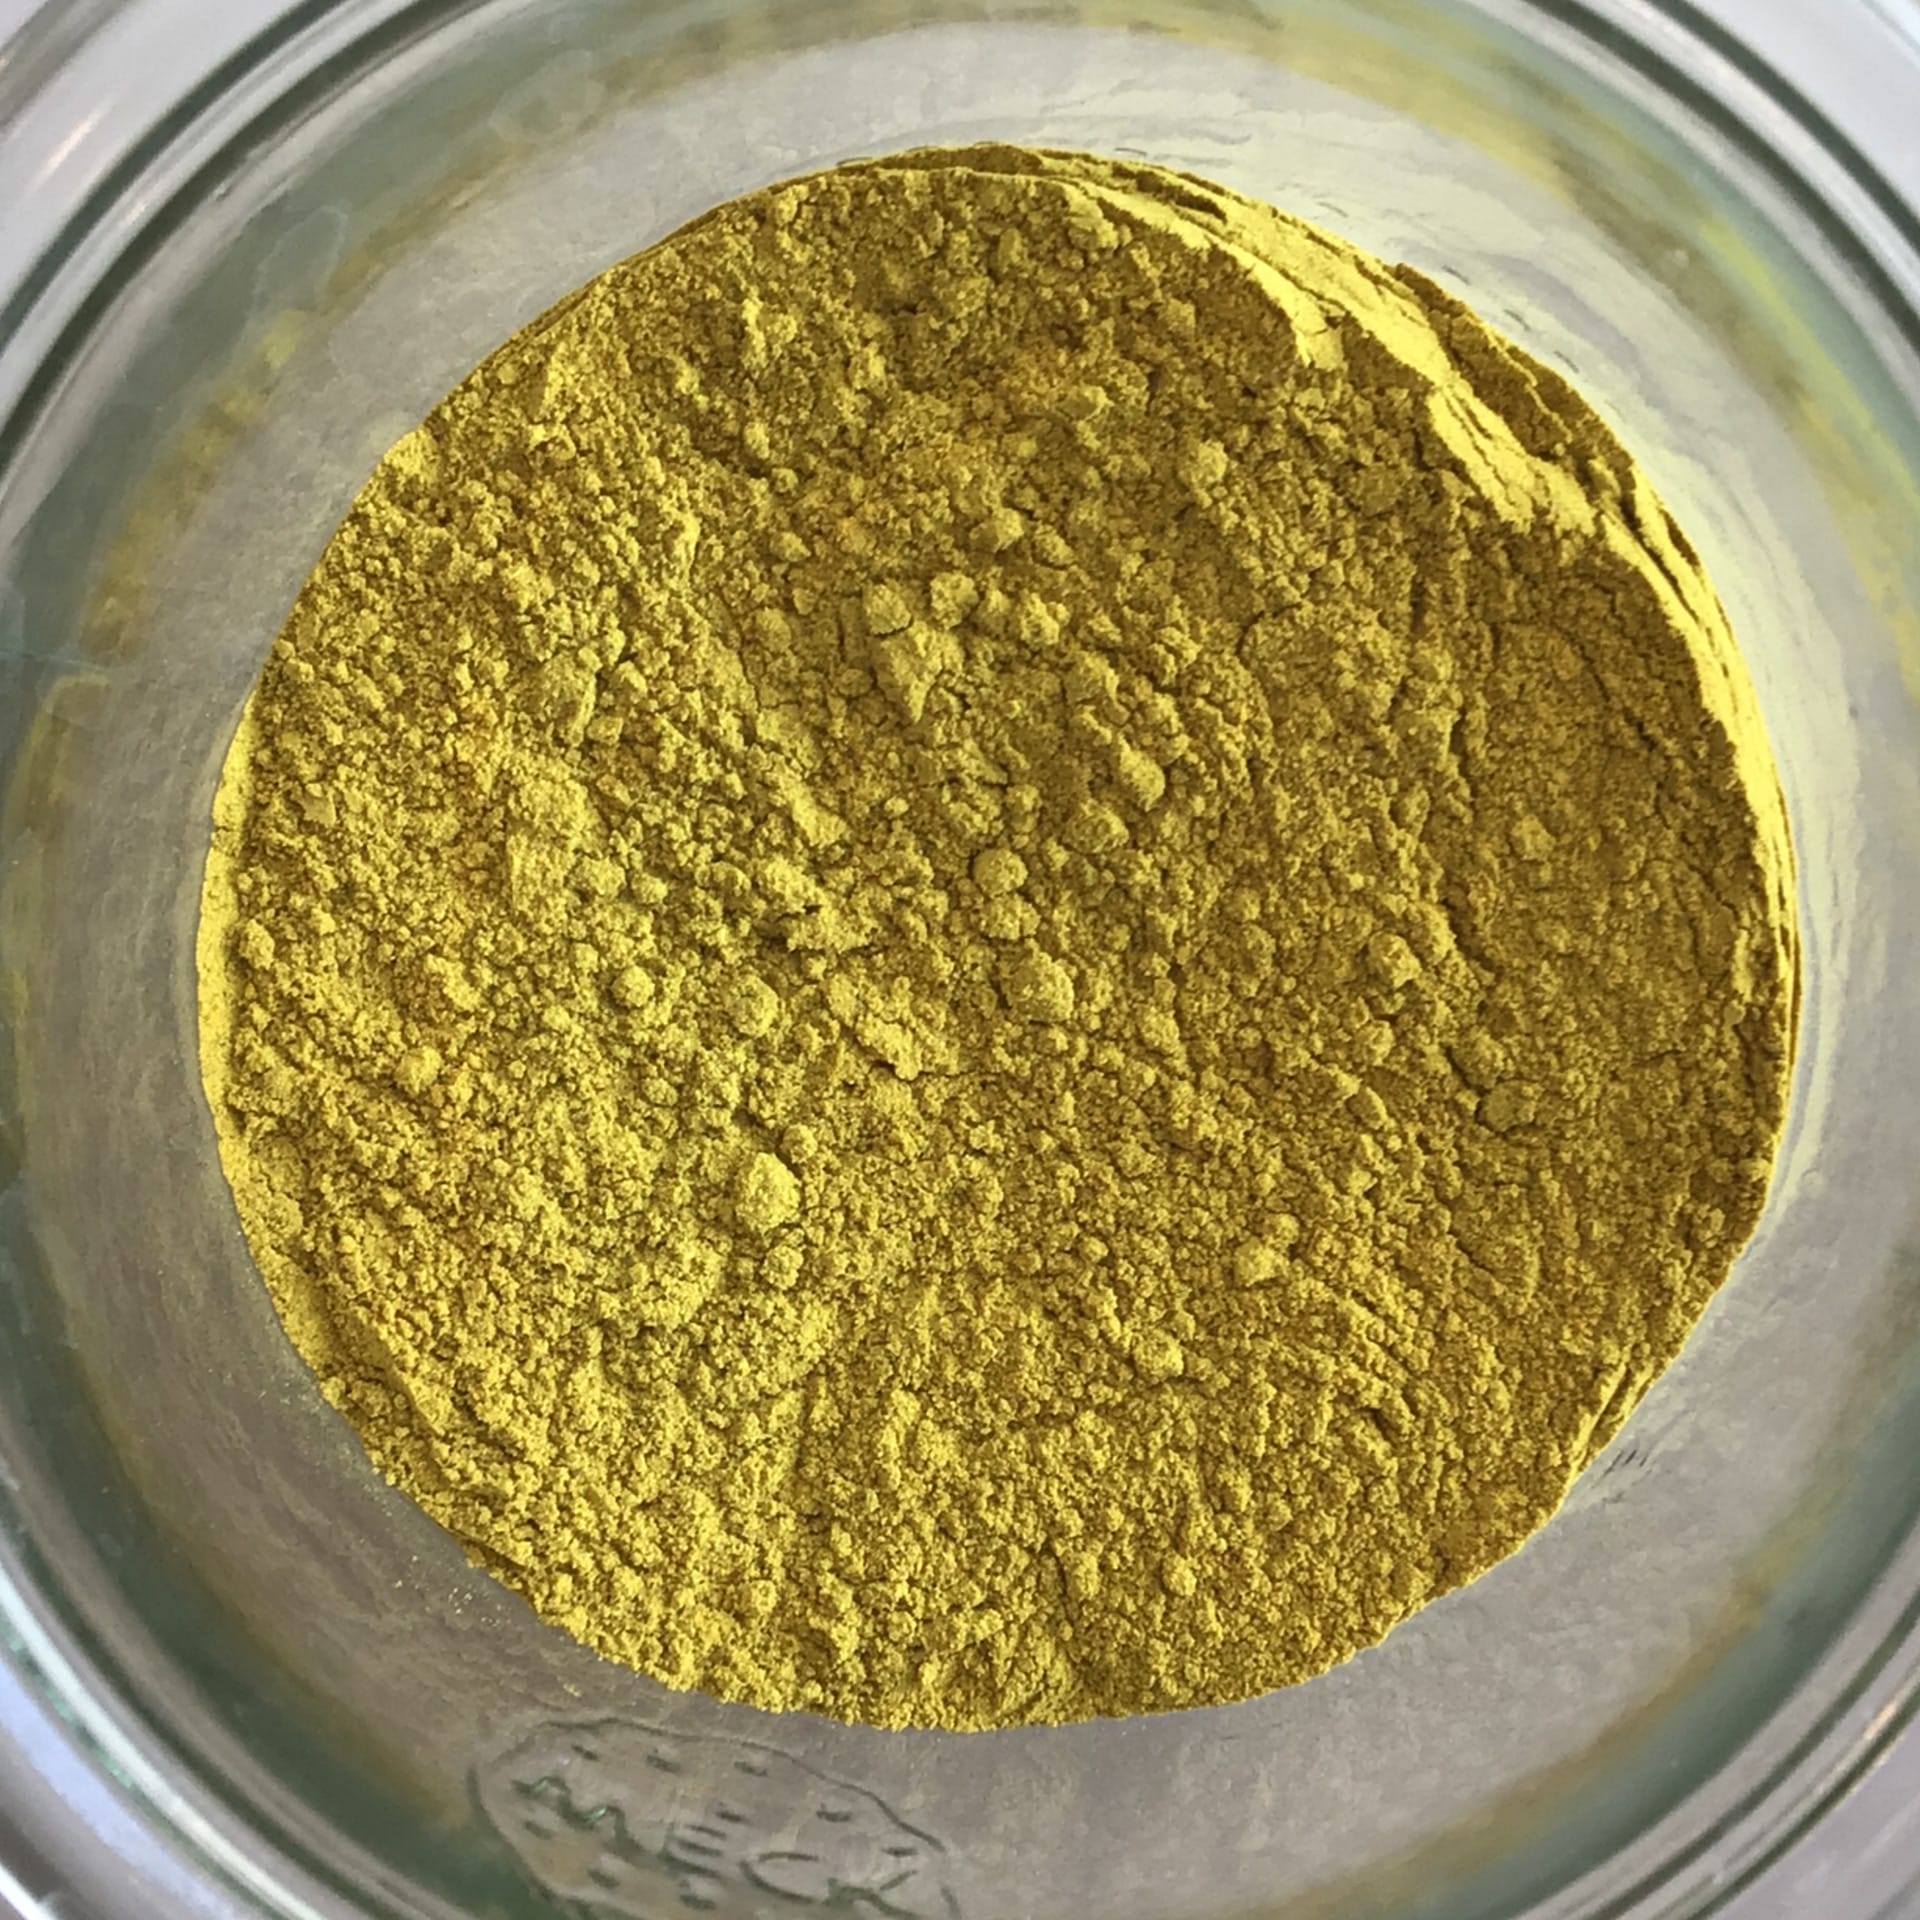 goldenseal root powder 1570 oz